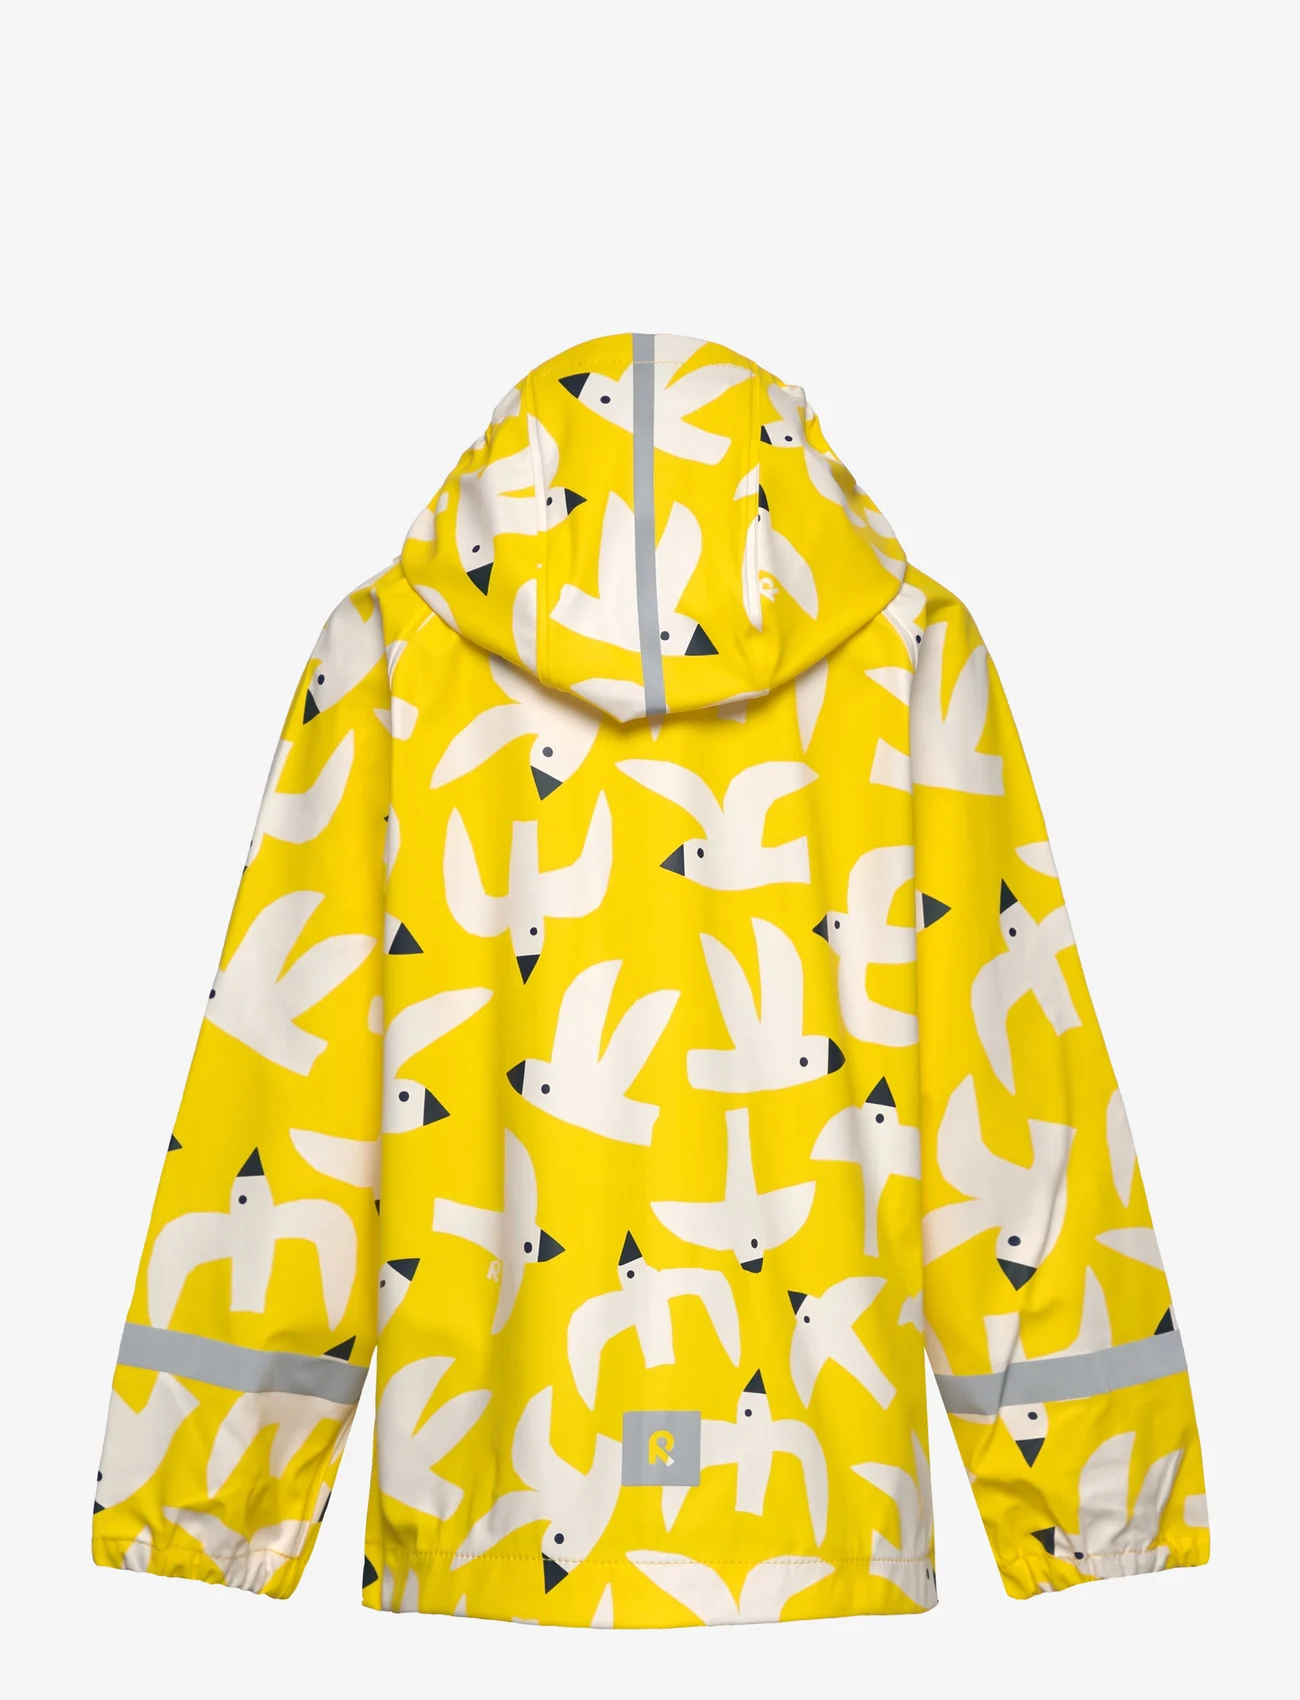 Reima - Raincoat, Vesi - rain jackets - yellow - 1